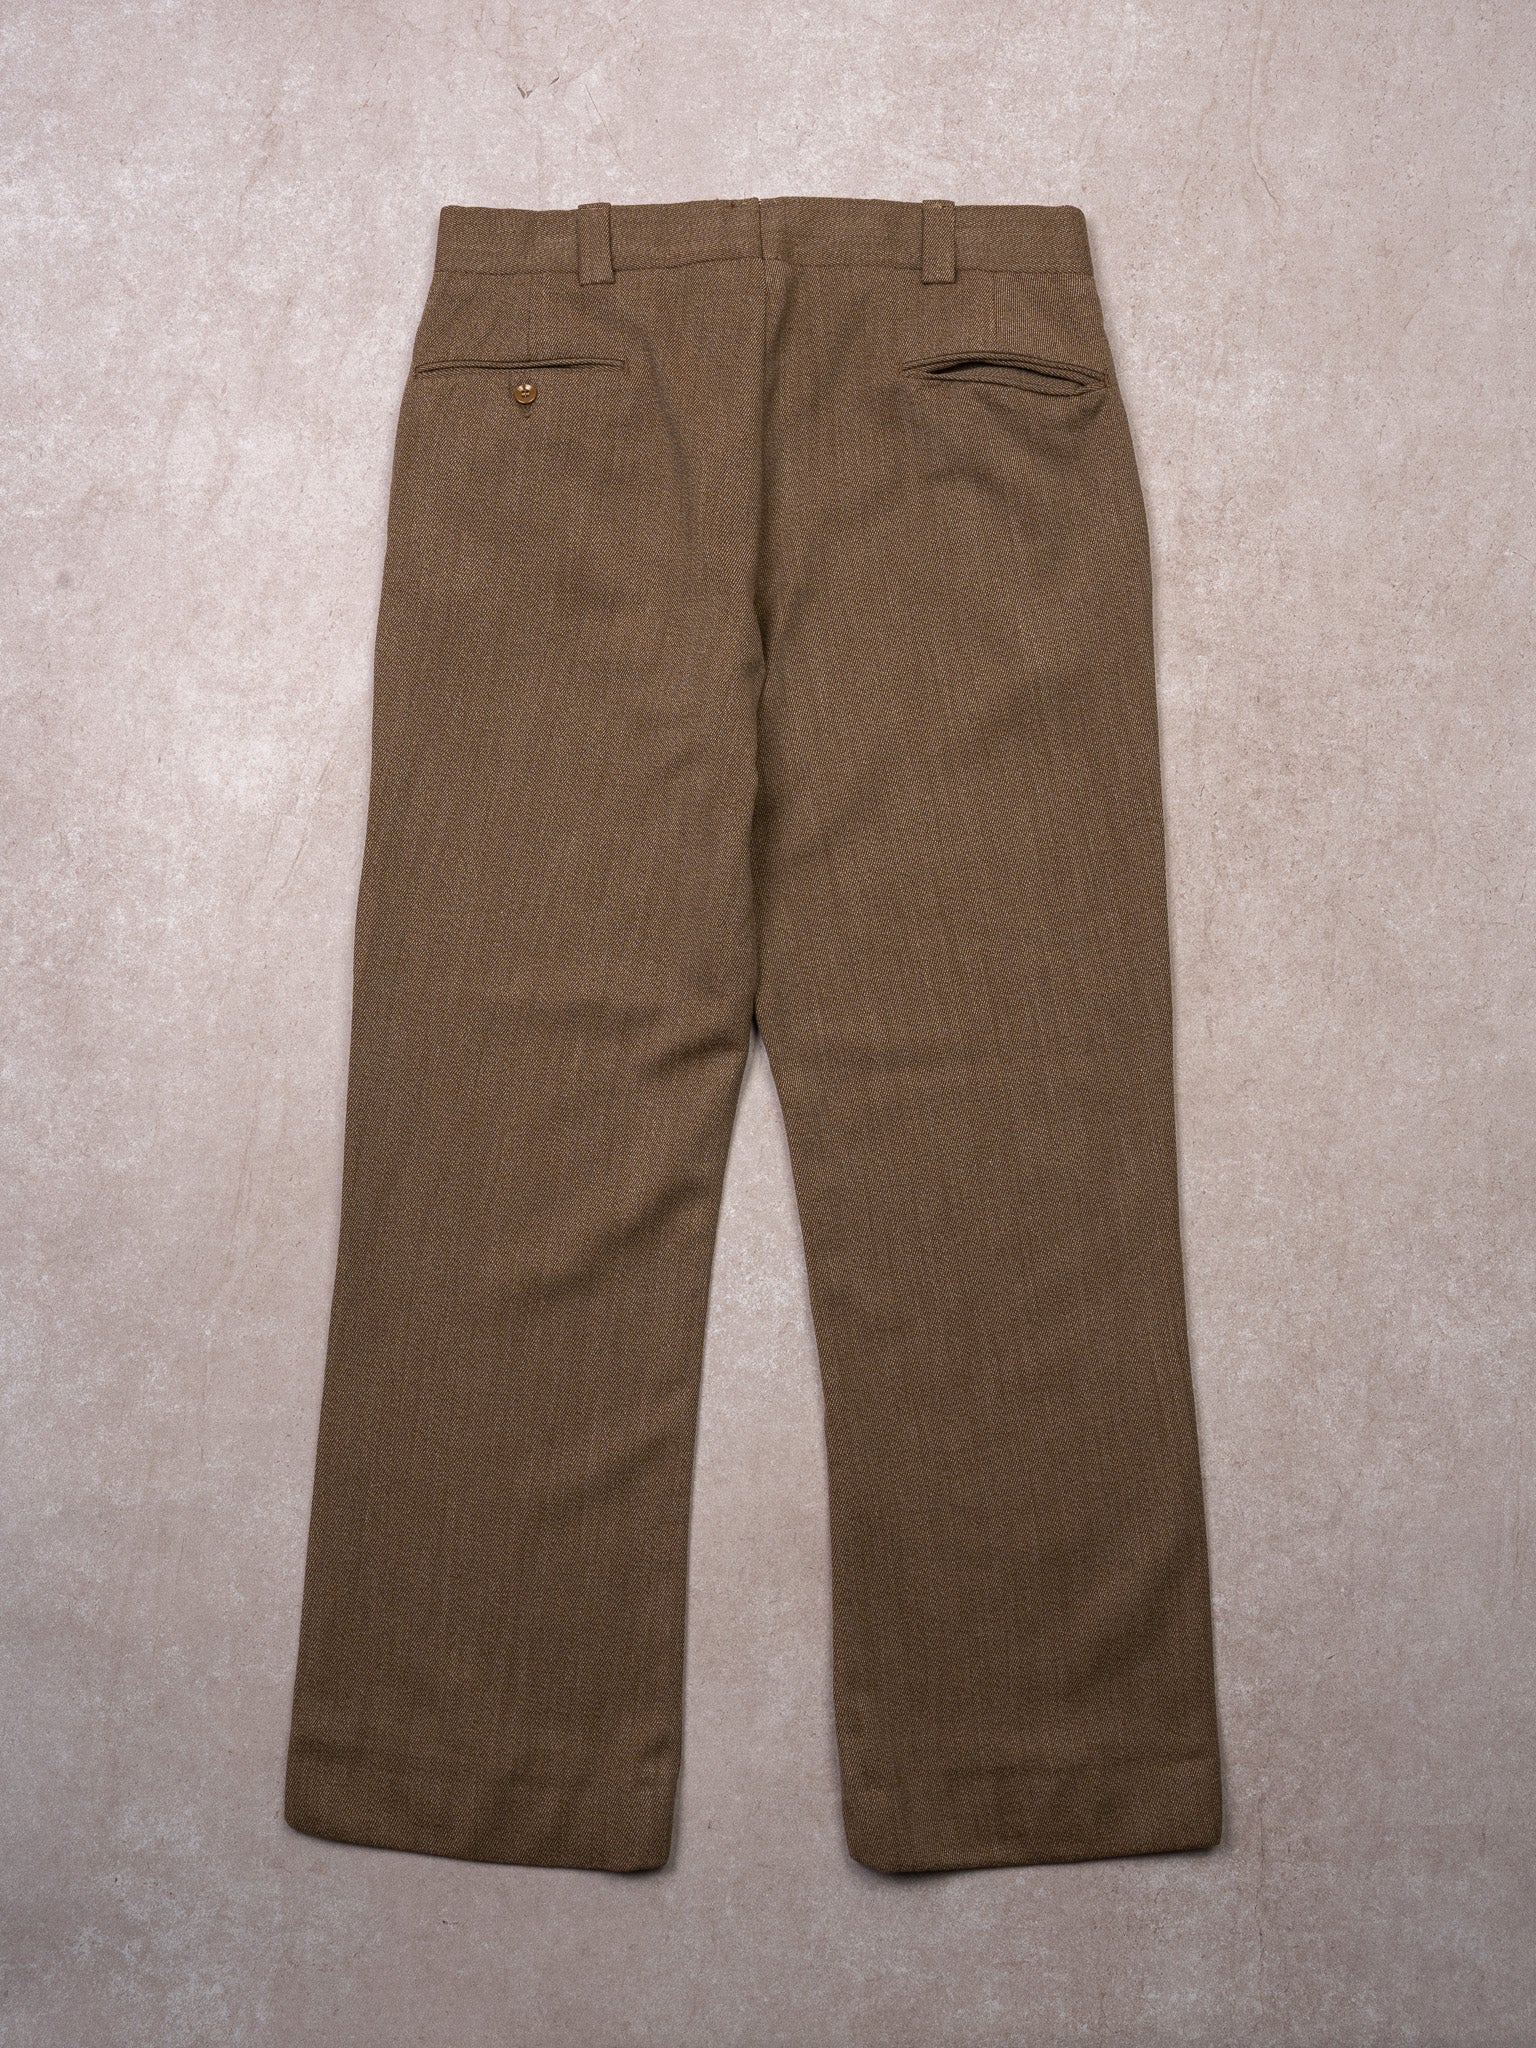 Vintage 60s Brown Wool Dress Pants (34 x 28)